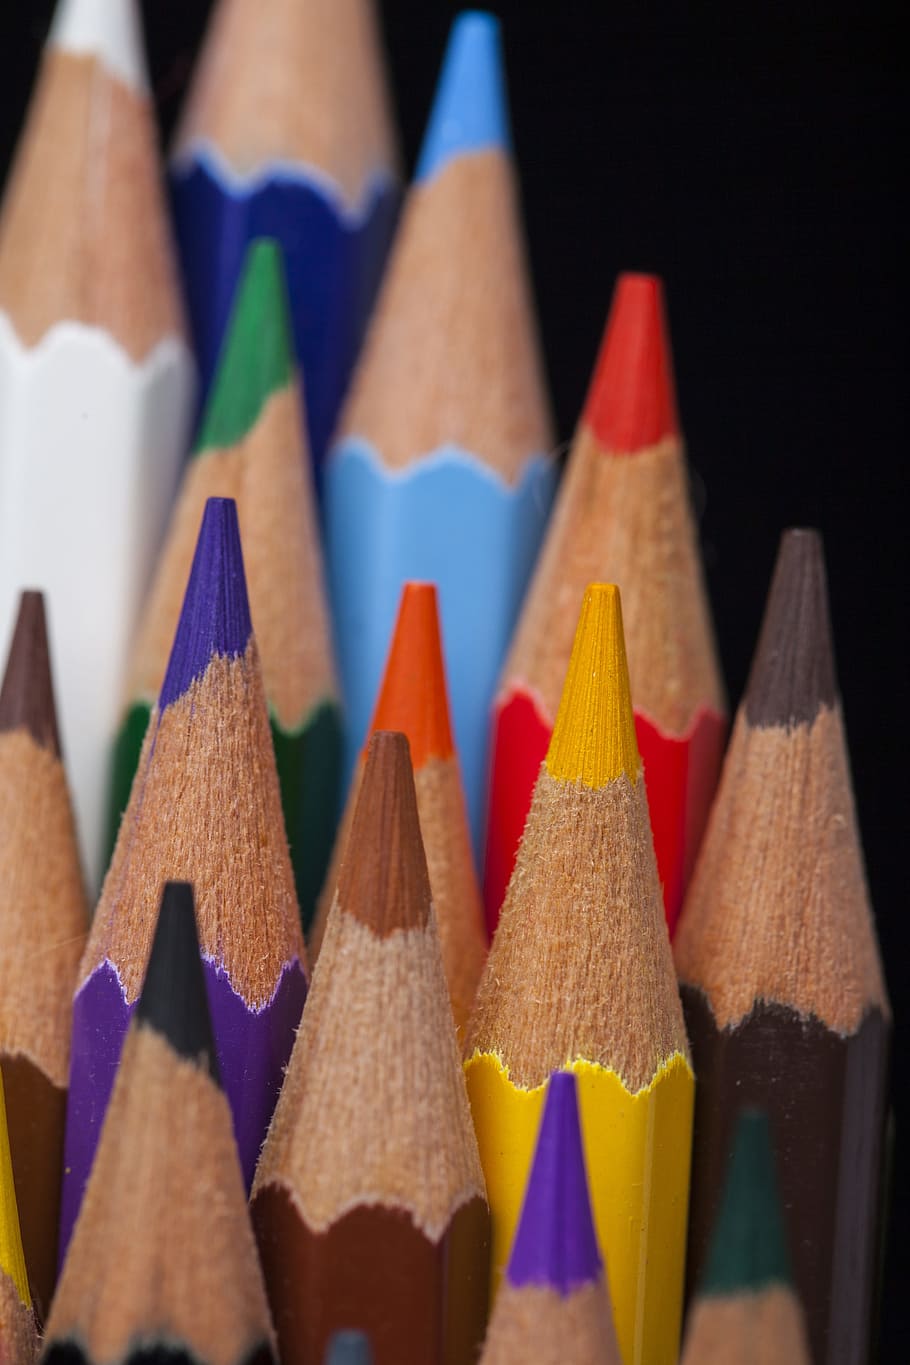 閉じる, 写真, 色とりどりの色鉛筆, 色とりどり, 色鉛筆, ロット, ペン, 色, 鉛筆, 書くこと